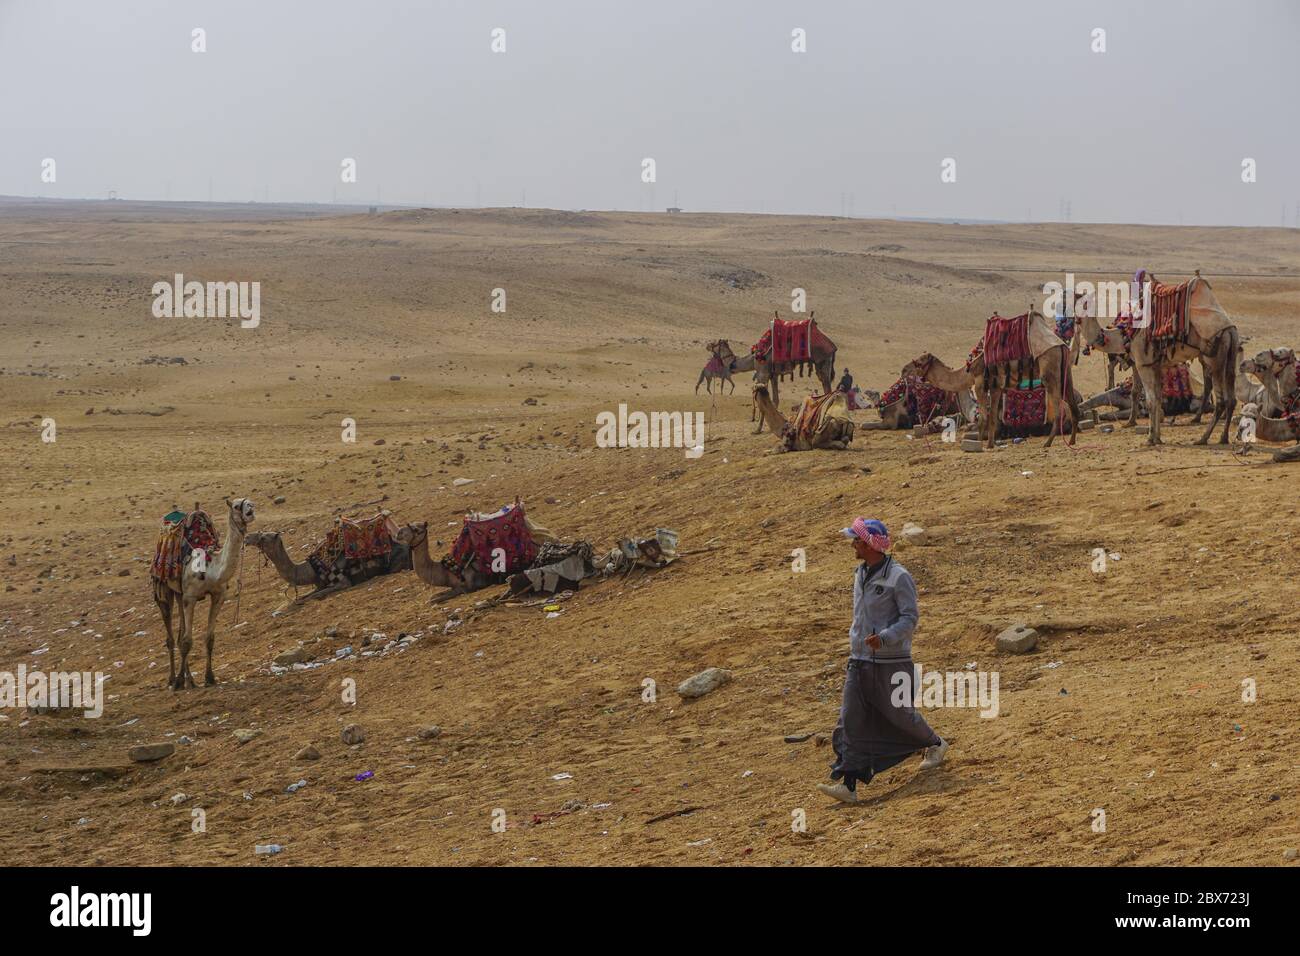 Giza, Egipto: Camellos con coloridas mantas de sillín esperan a los jinetes en arena cubierta de basura cerca del complejo de la pirámide de Khufu. Foto de stock